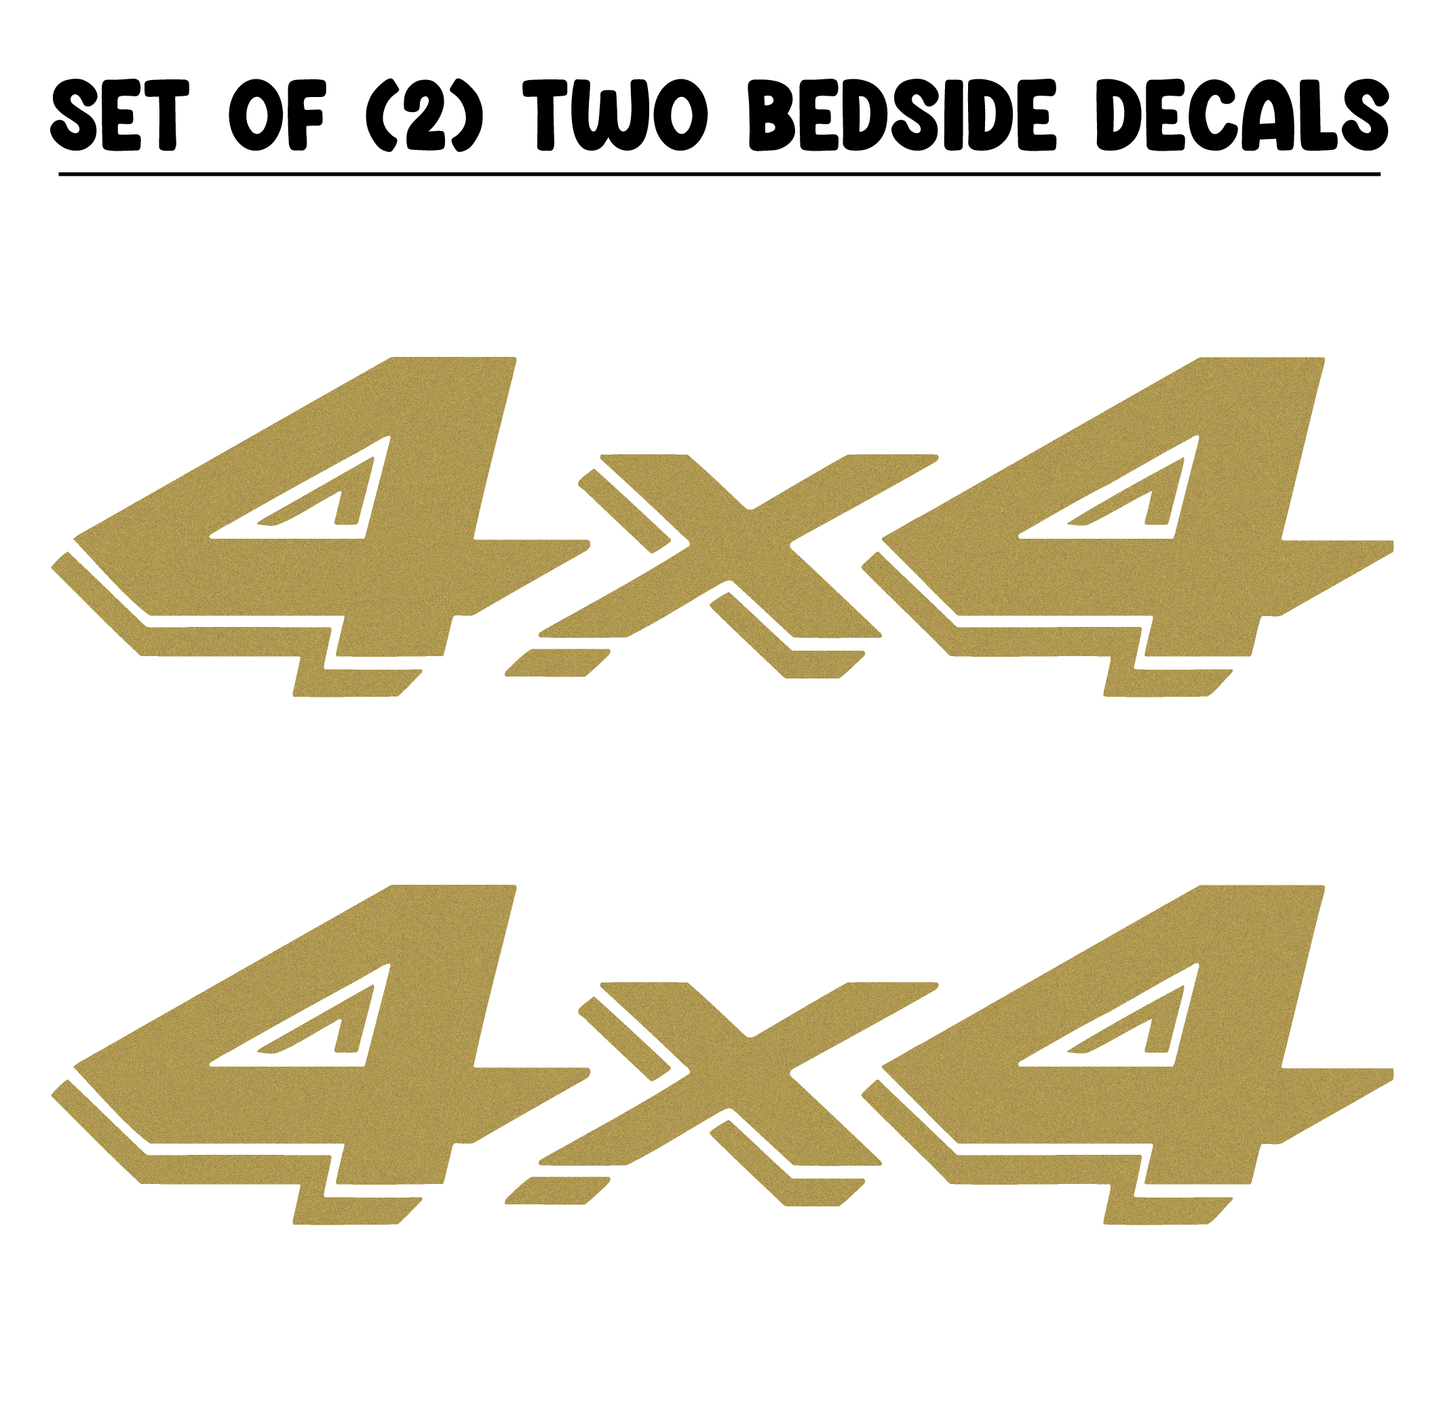 Shop Vinyl Design RAM / Dakota Trucks 4 x 4 Replacement Bedside Decals #04 Vehicle 001 Gold Metallic Shop Vinyl Design decals stickers